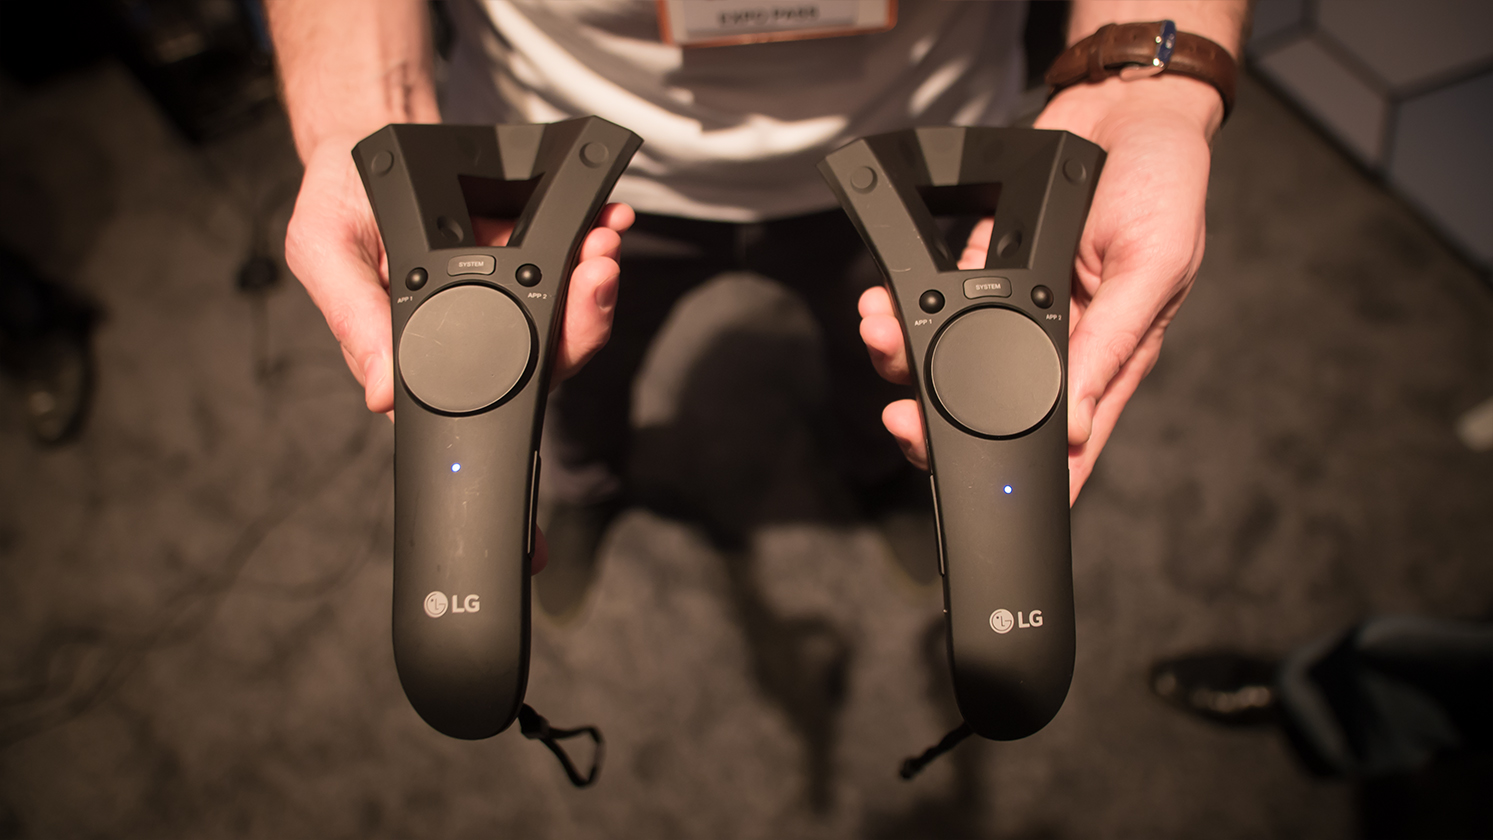 Immagine pubblicata in relazione al seguente contenuto: Virtual Reality: LG e Valve mostrano un prototipo dell'headset SteamVR | Nome immagine: news25910_LG-Valve-Steam-VR_9.jpg